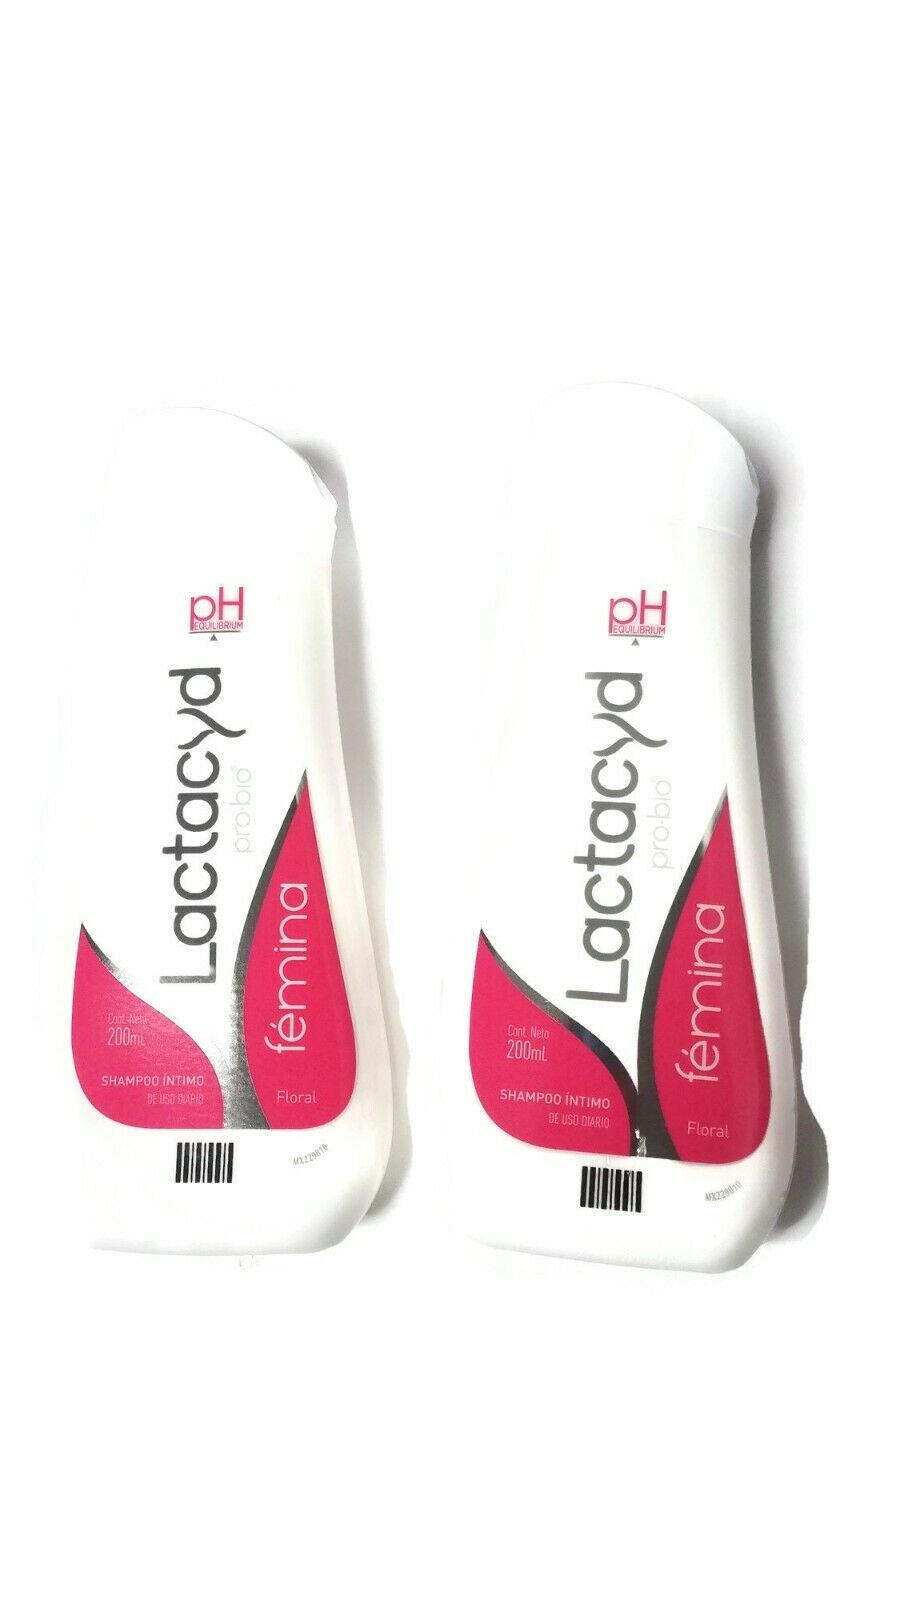 2 Bottle Lactacyd Pro-bio(femina Floral)shampoo Íntimo De Uso Diario 2 X 200ml